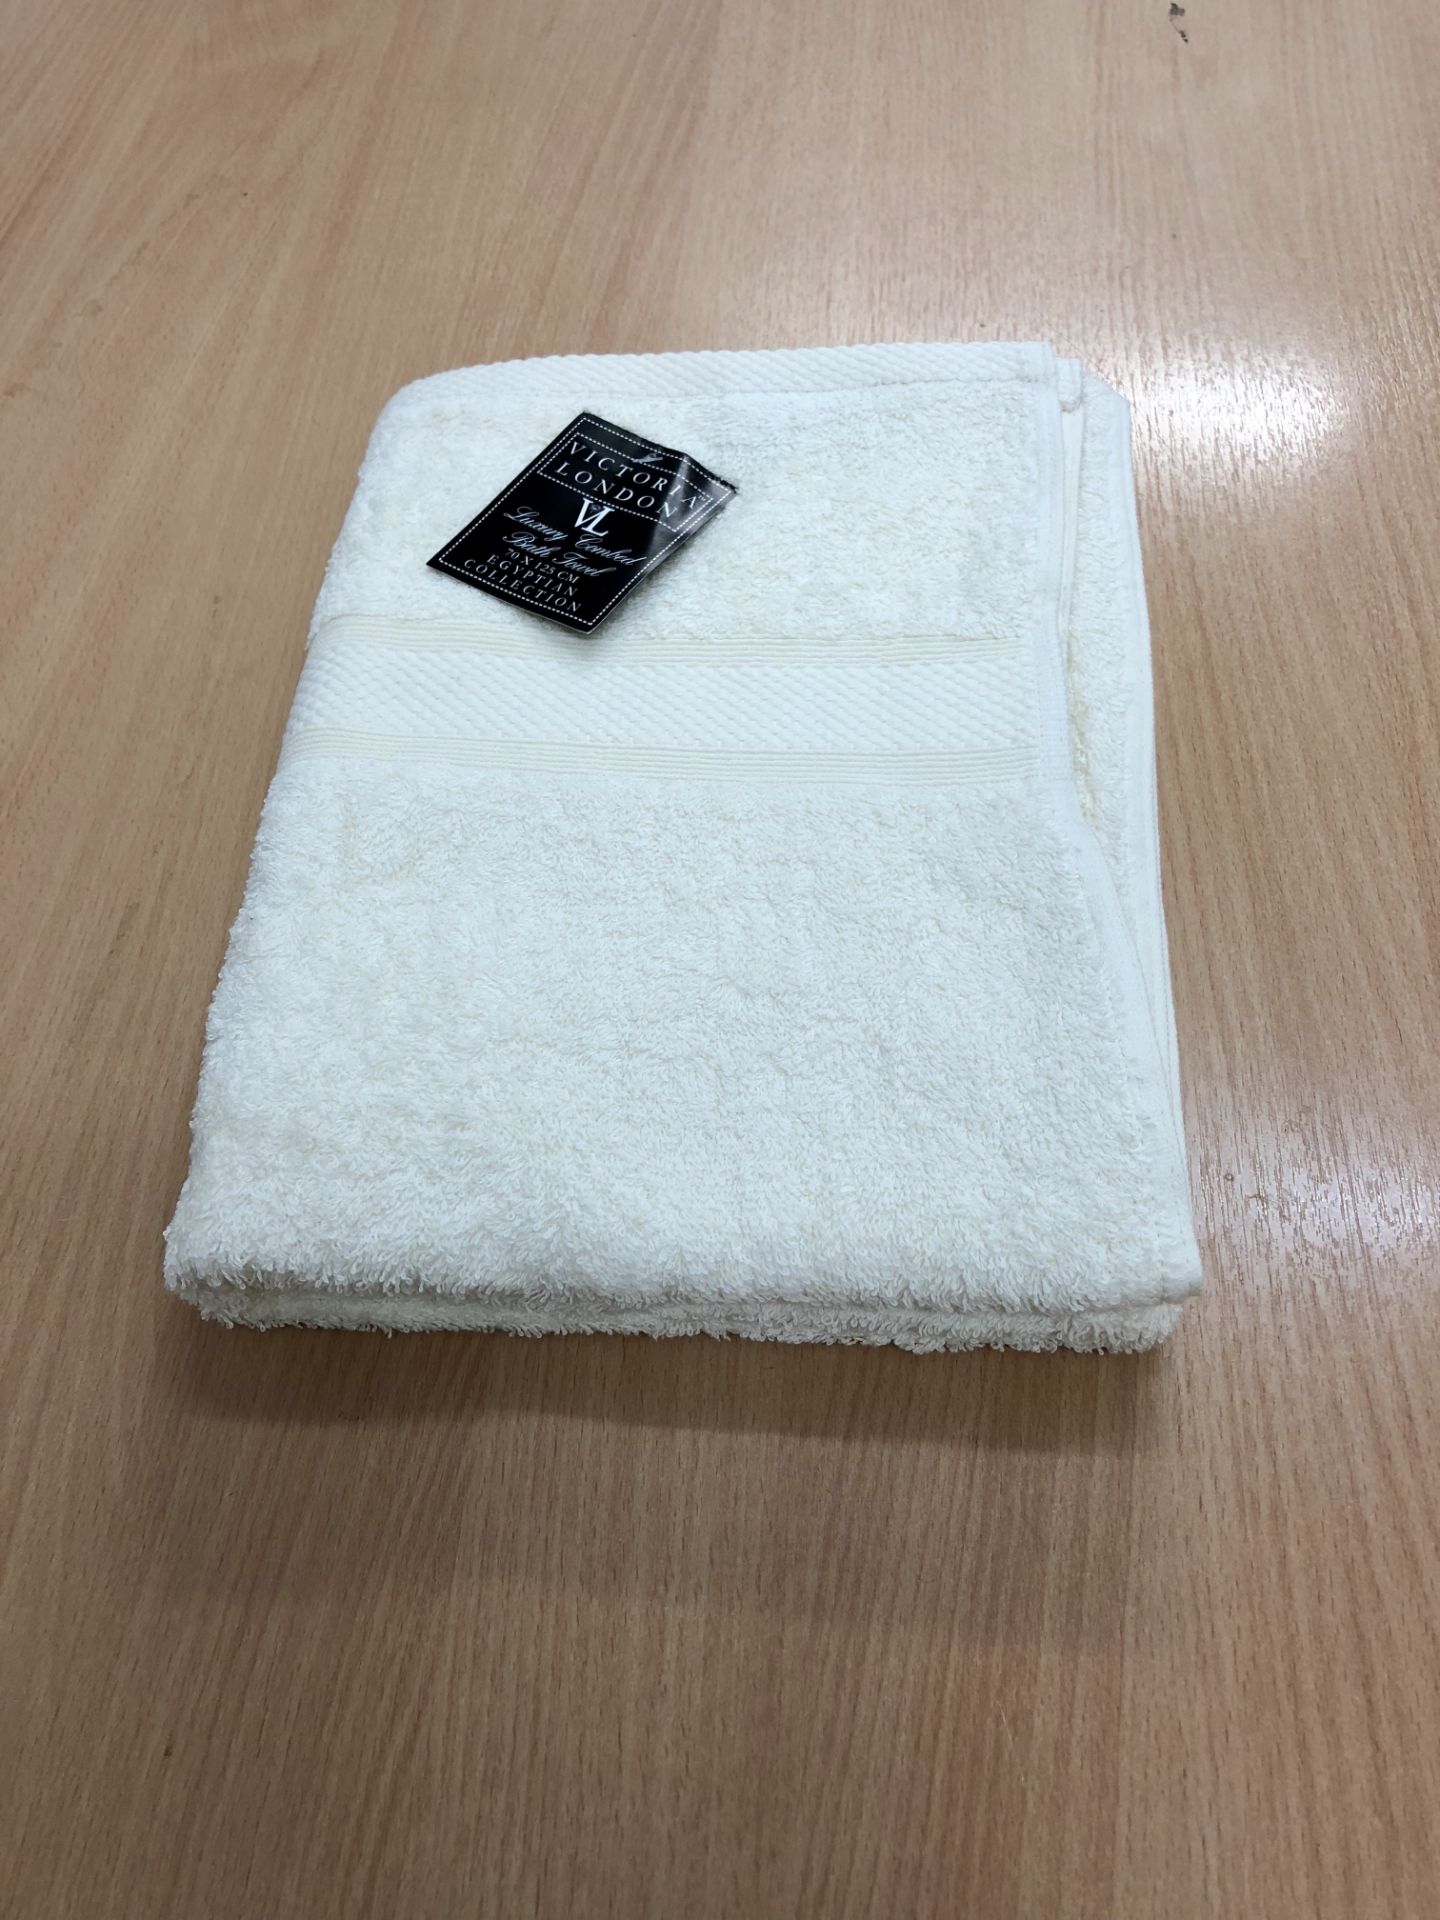 V Brand New 100% Cotton Bath Towel - Hotel Quality - 125 x 70 cm - Cream - ISP £16.00 Dunelm (